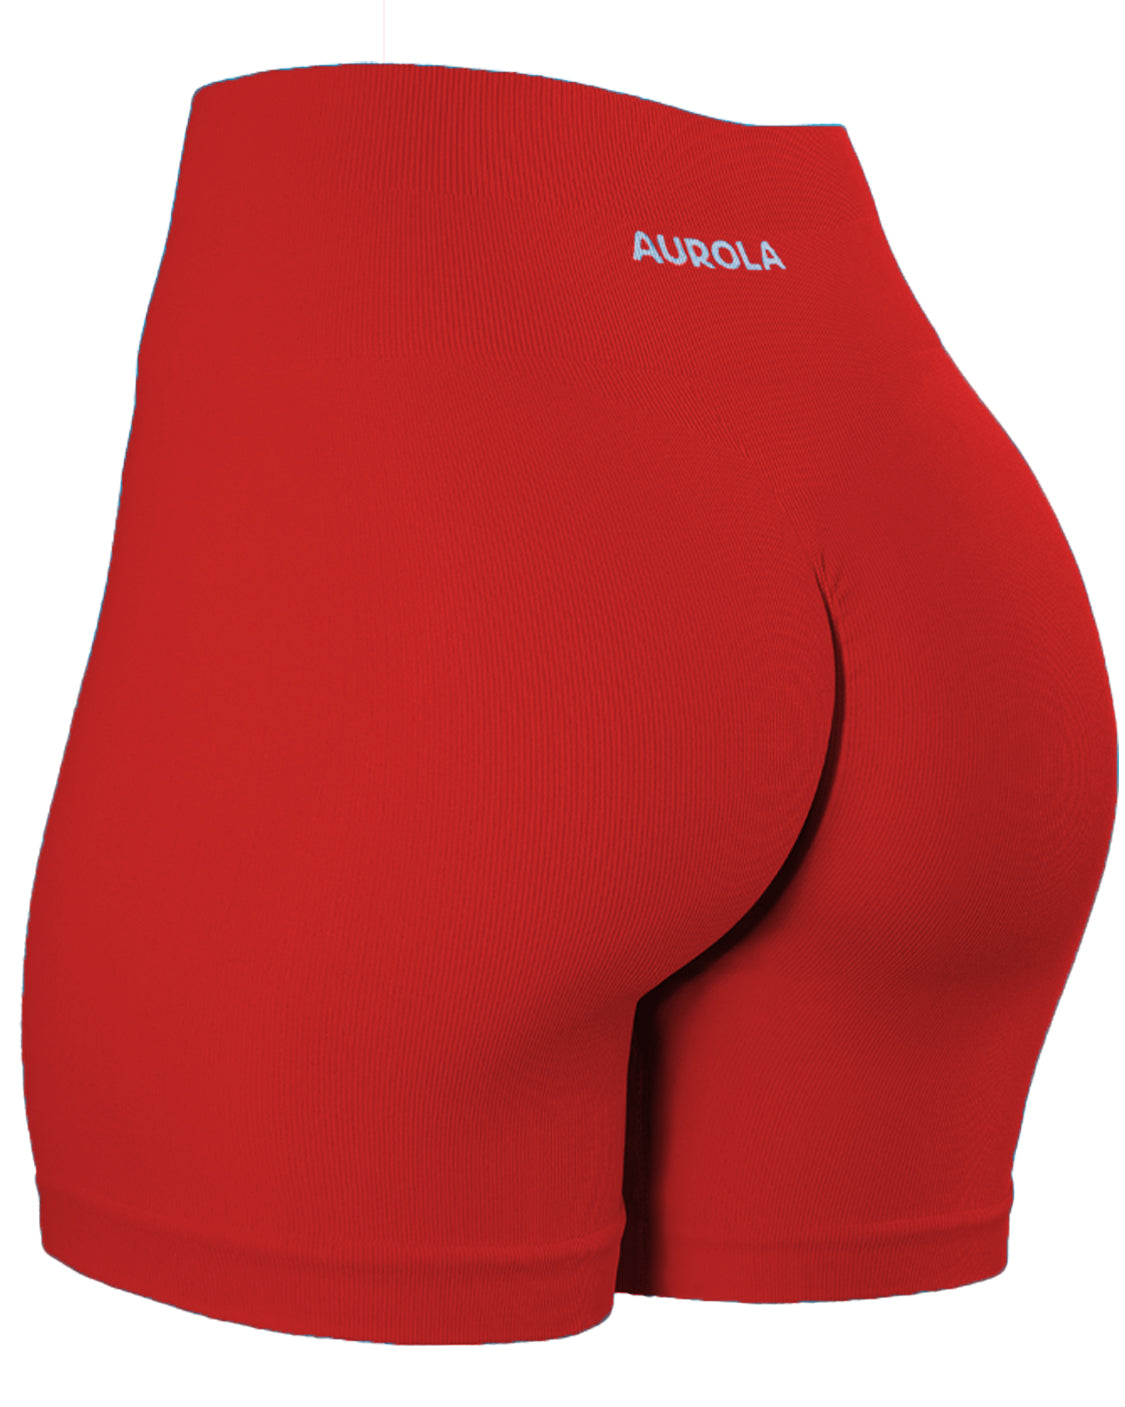 The @aurolaus sports bra and shorts 🤌🏼🔥 #aurola #aurolashorts #aur